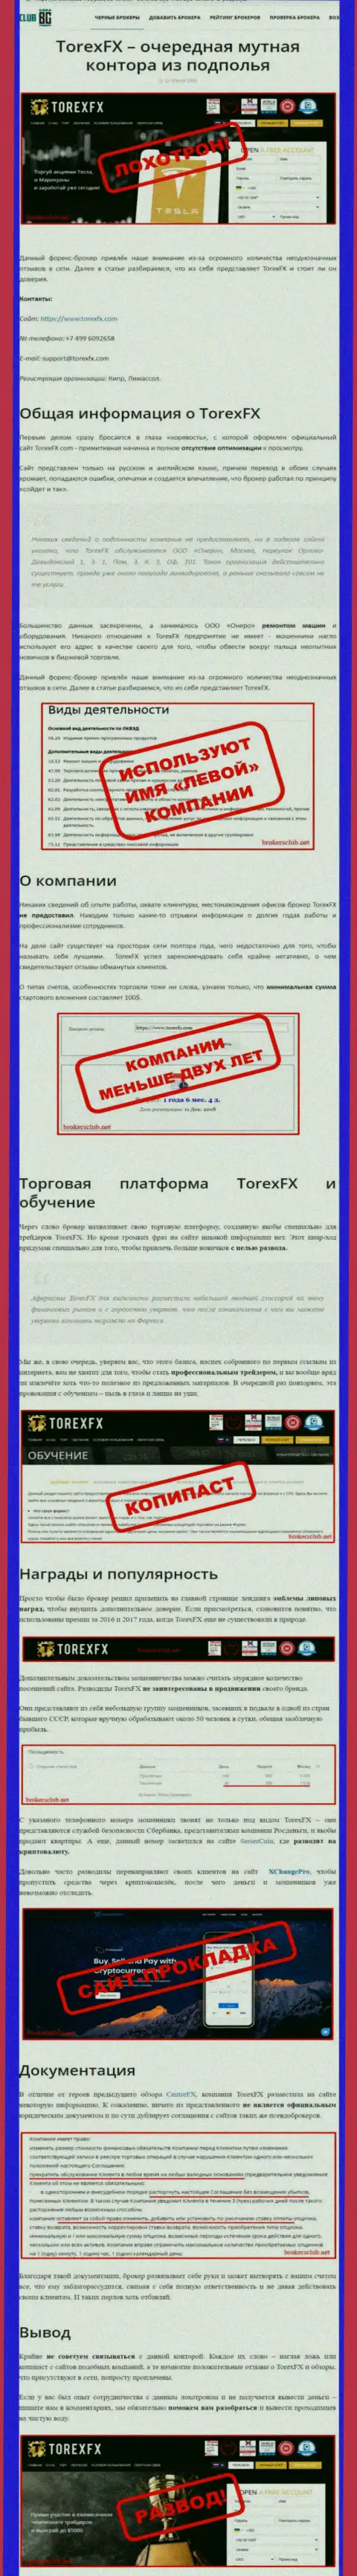 О перечисленных в контору ТорексФХ Ком средствах можете и не вспоминать, воруют все до последнего рубля (обзор)